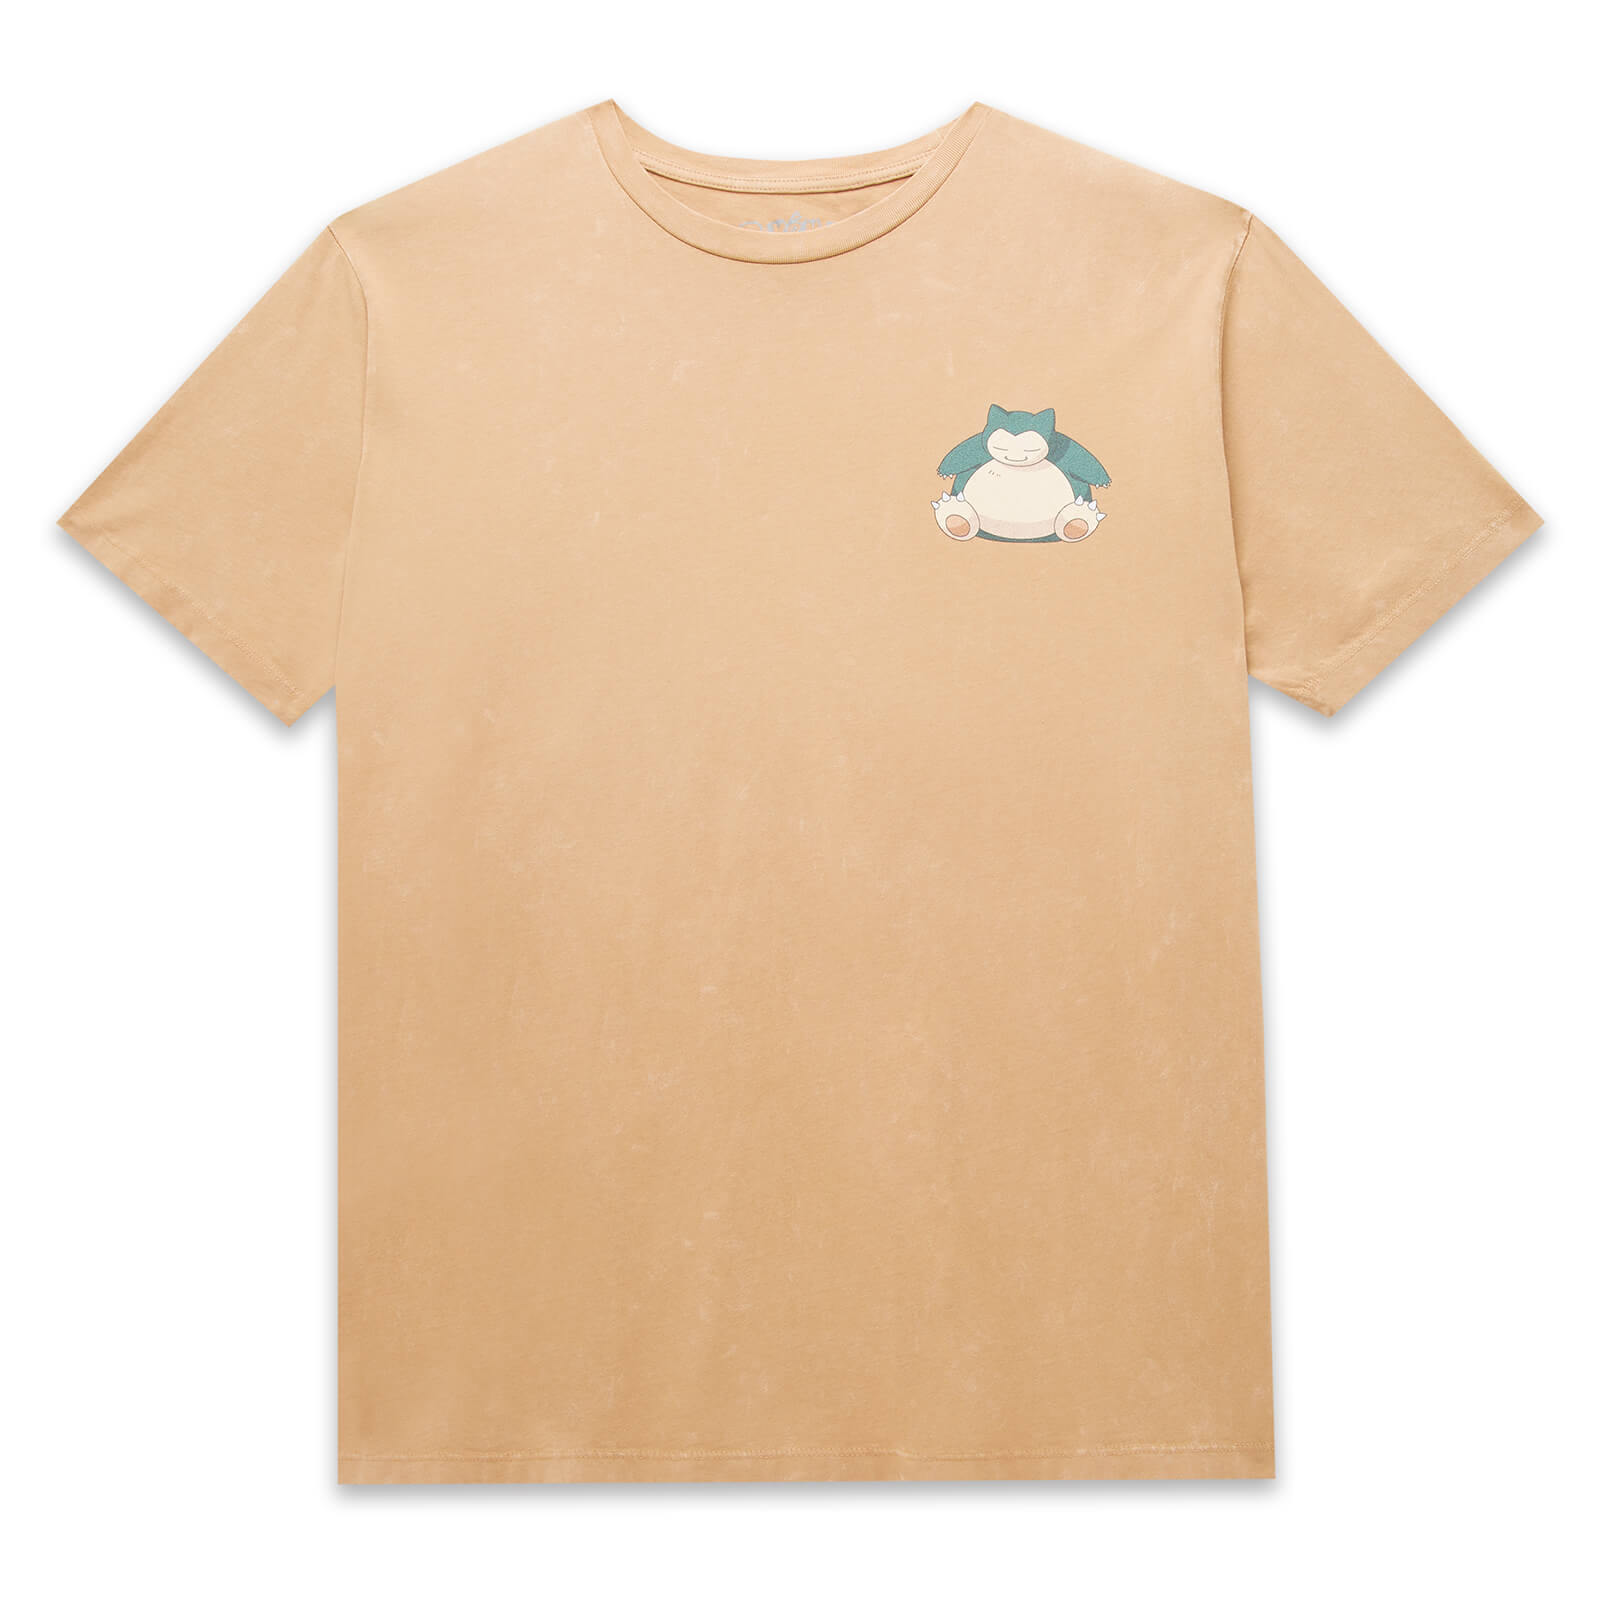 Pokemon Snorlax Unisex T-Shirt - Tan Acid Wash - XS - Tan Acid Wash